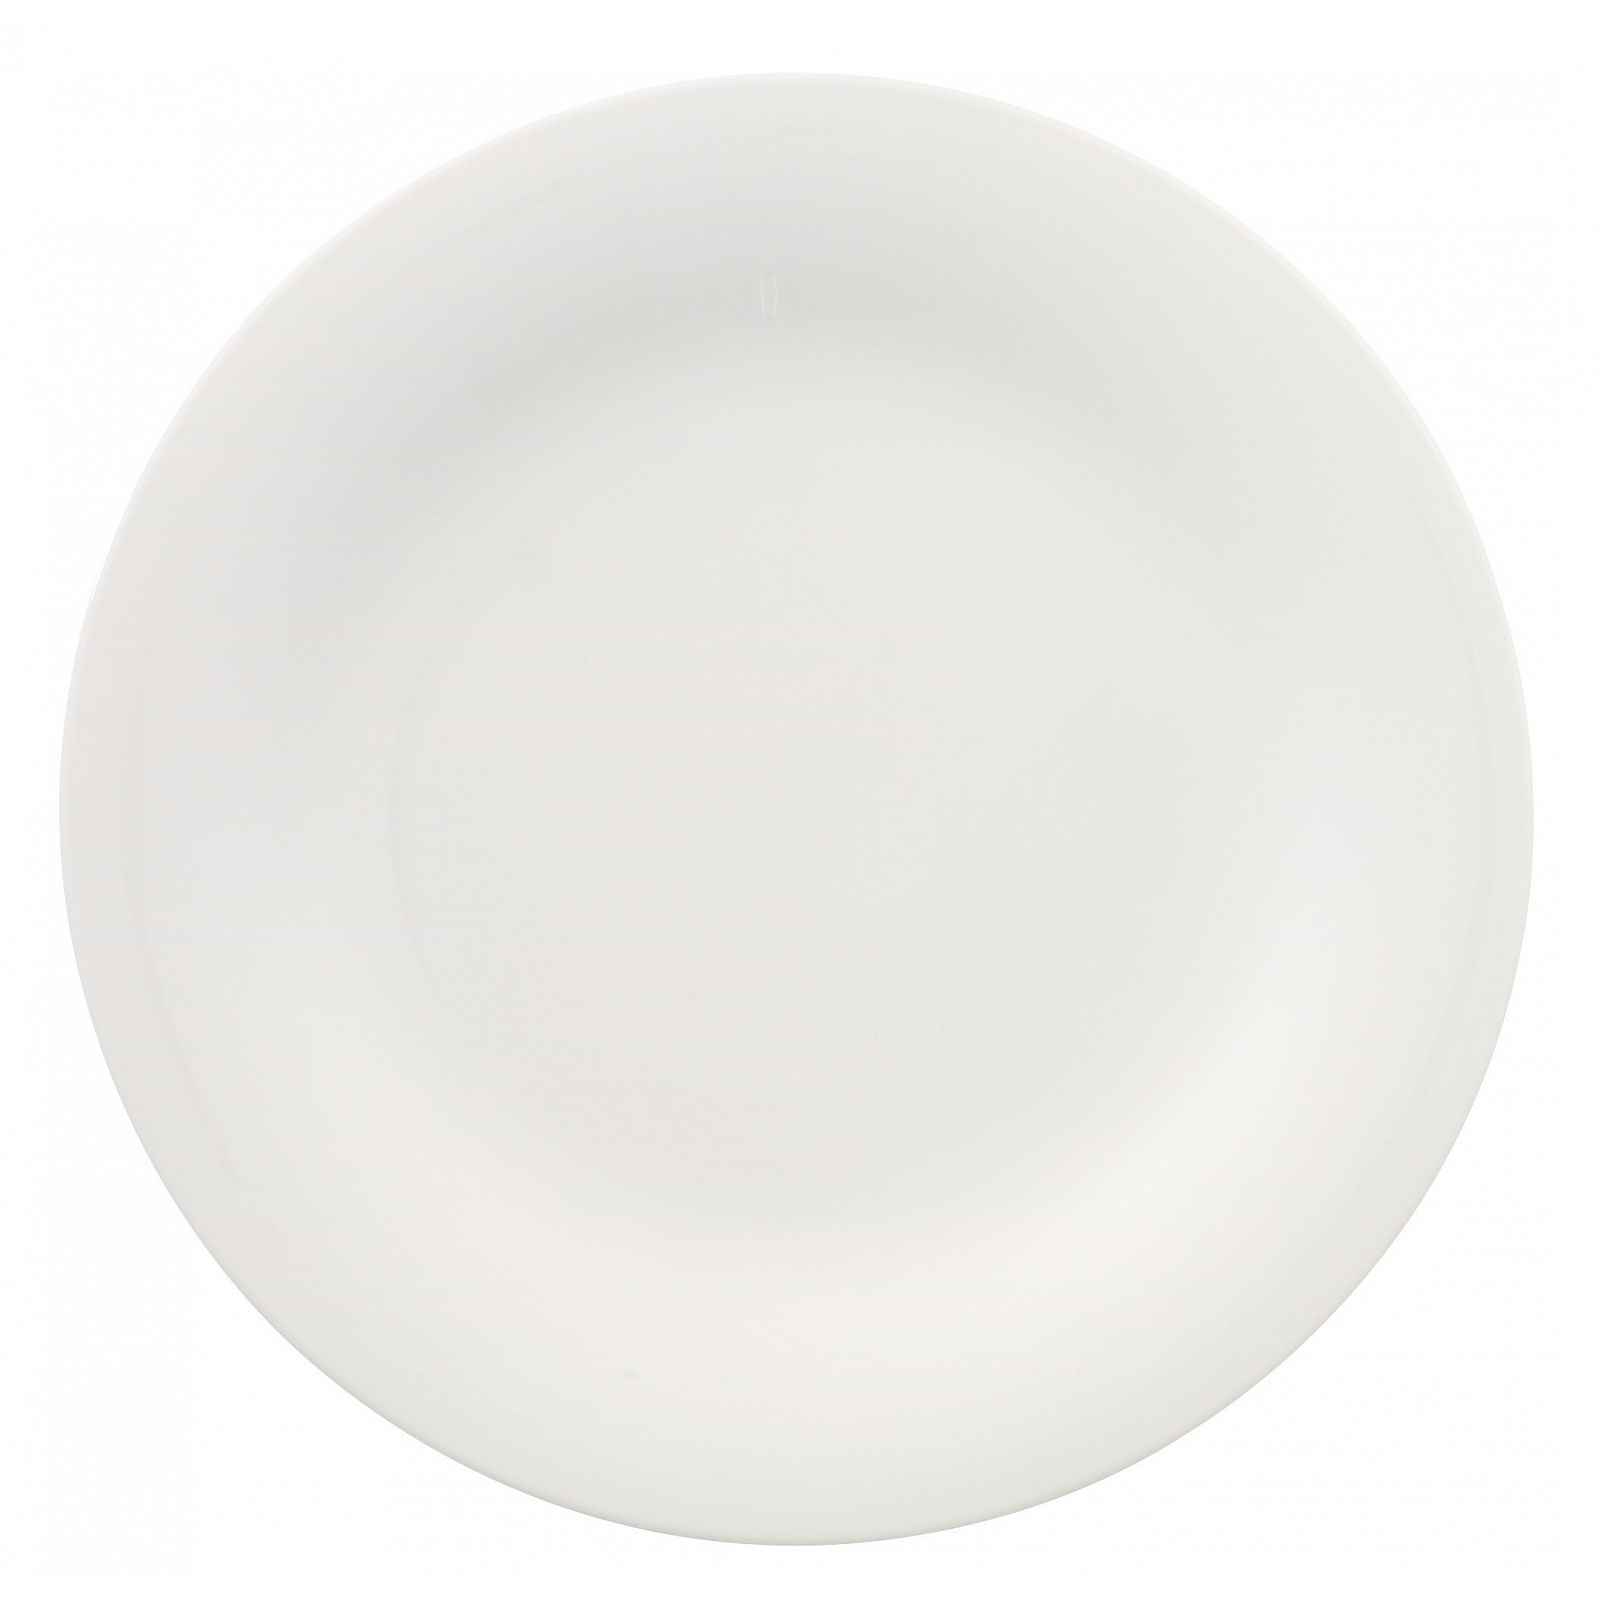 Bílý porcelánový talíř Villeroy & Boch New Cottage, ⌀ 27 cm